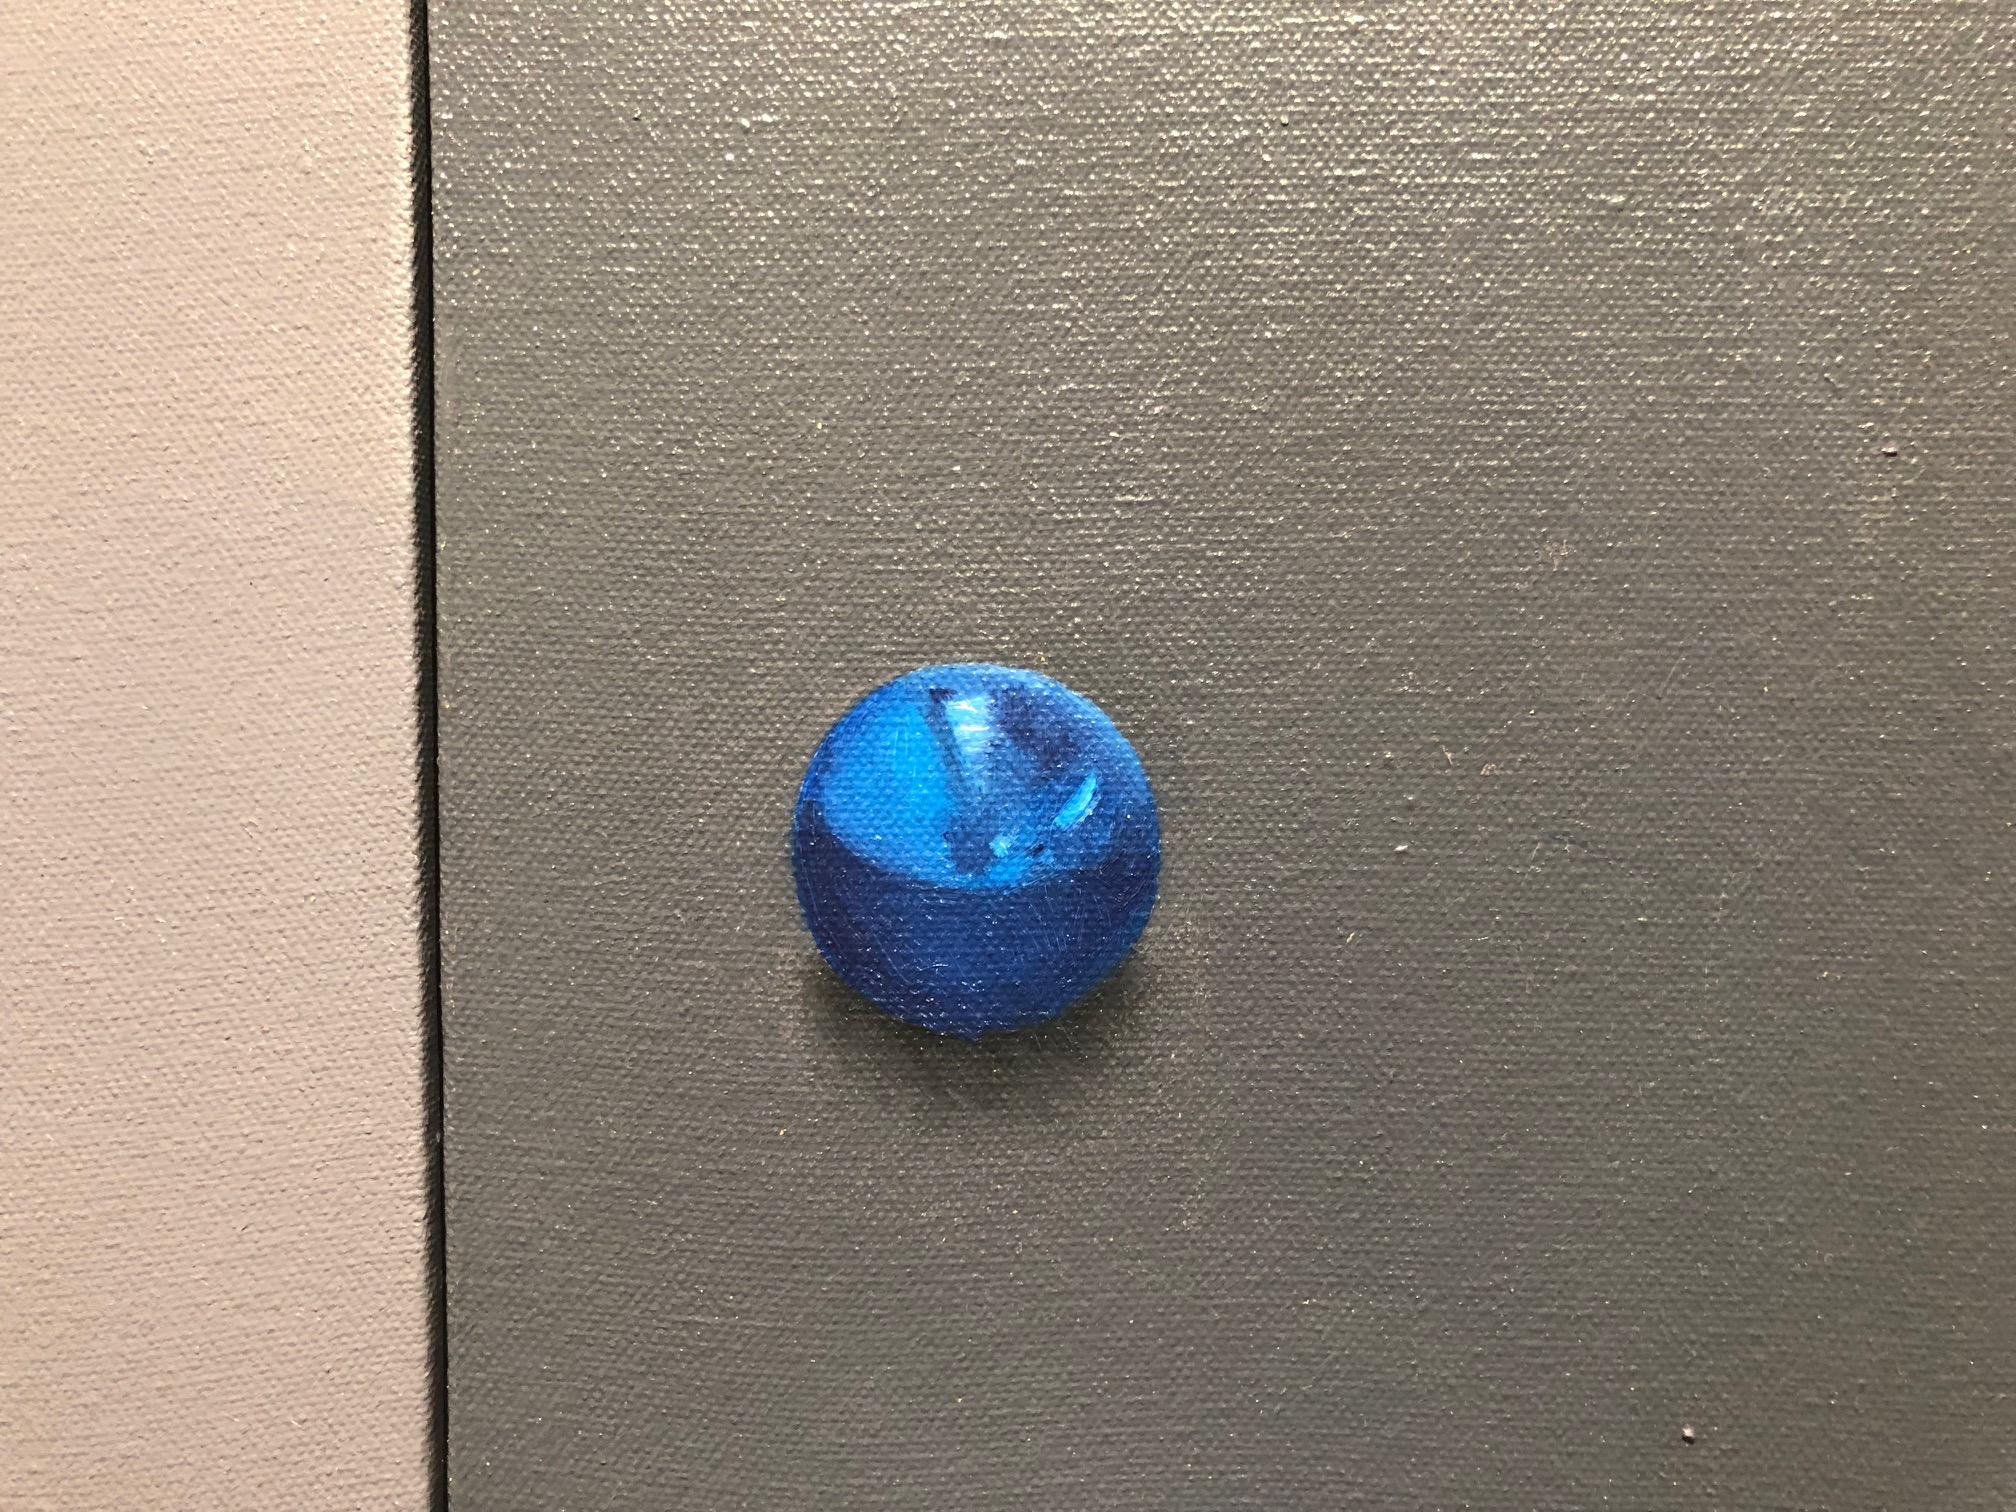 Une coupe argentée minimale et sereine avec un orbe réfléchissant bleu cobalt orne ce diptyque contemplatif, calme et zen, où deux toiles sont attachées pour créer une atmosphère de paix et de sérénité. 
œuvre d'art unique - du peintre réaliste